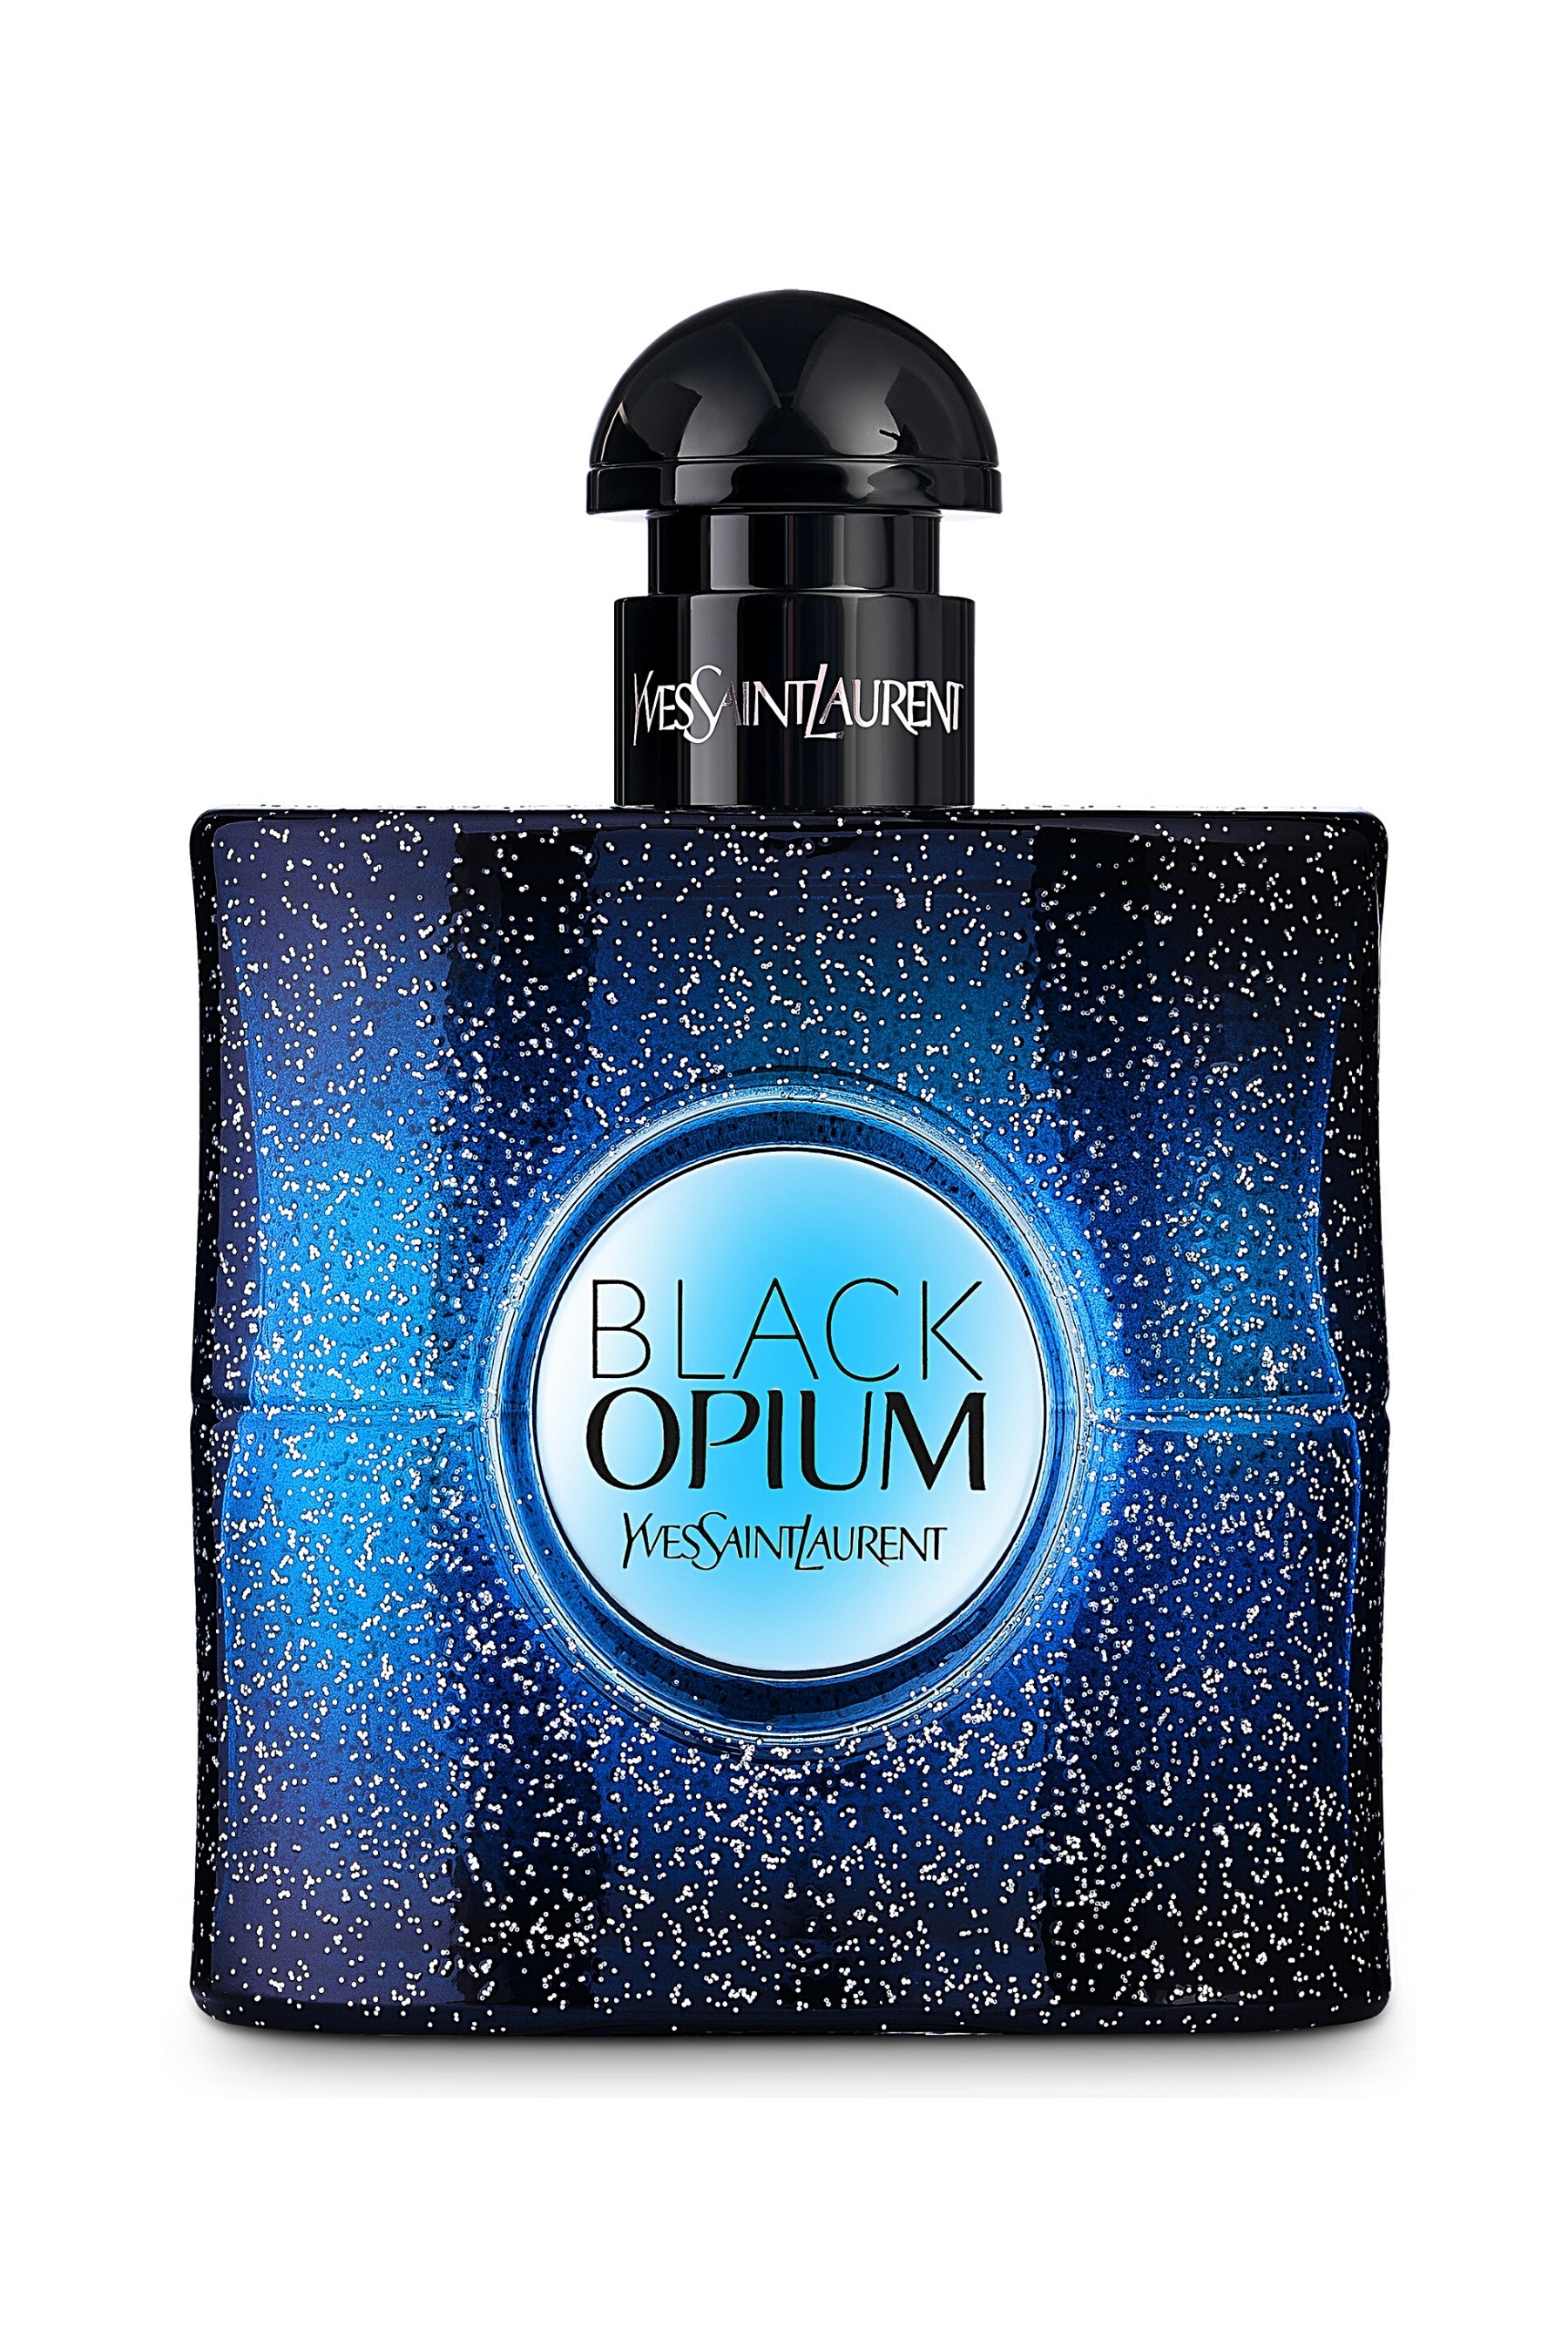 Yves Saint Laurent YSL Black Opium Intense Eau De Parfum Spray 1.6